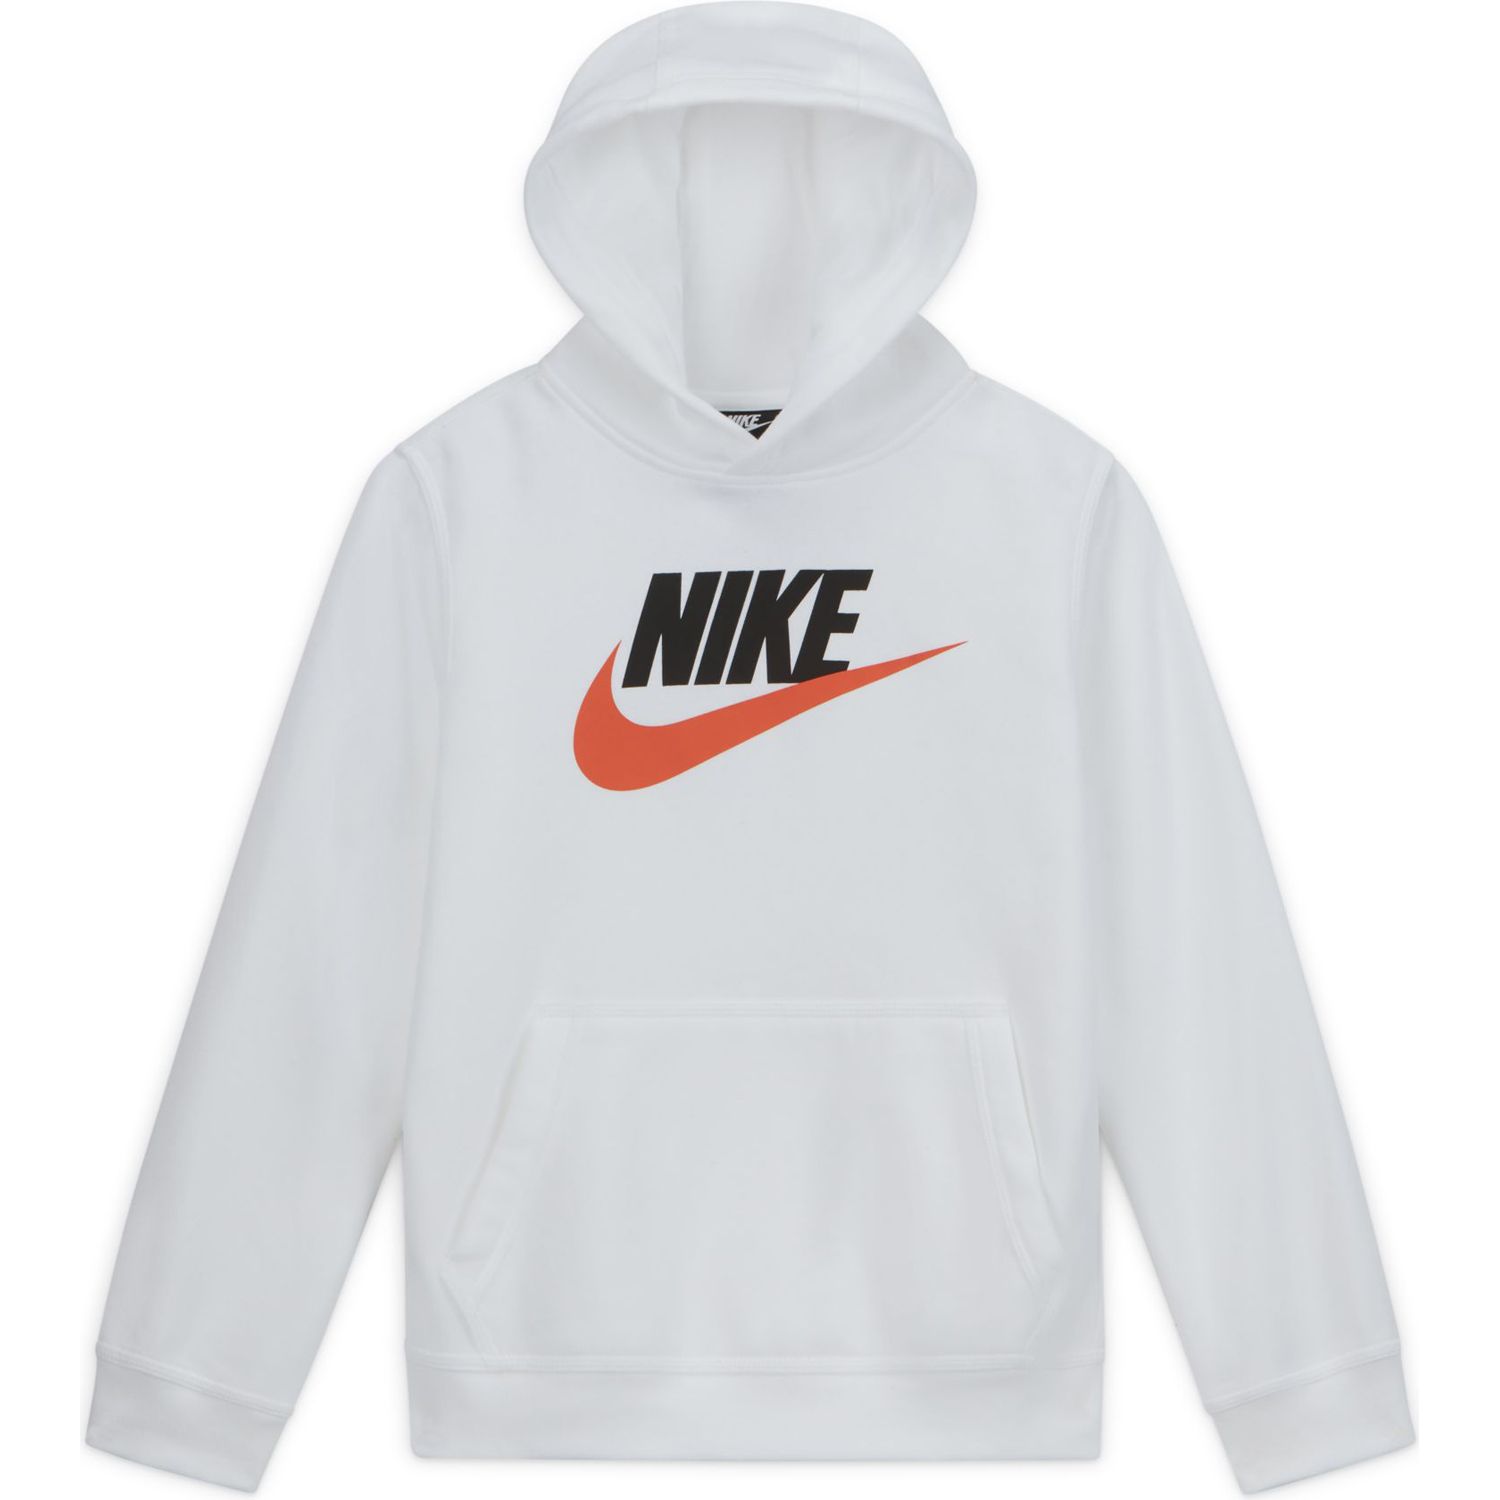 Boys White Nike Hoodies \u0026 Sweatshirts 